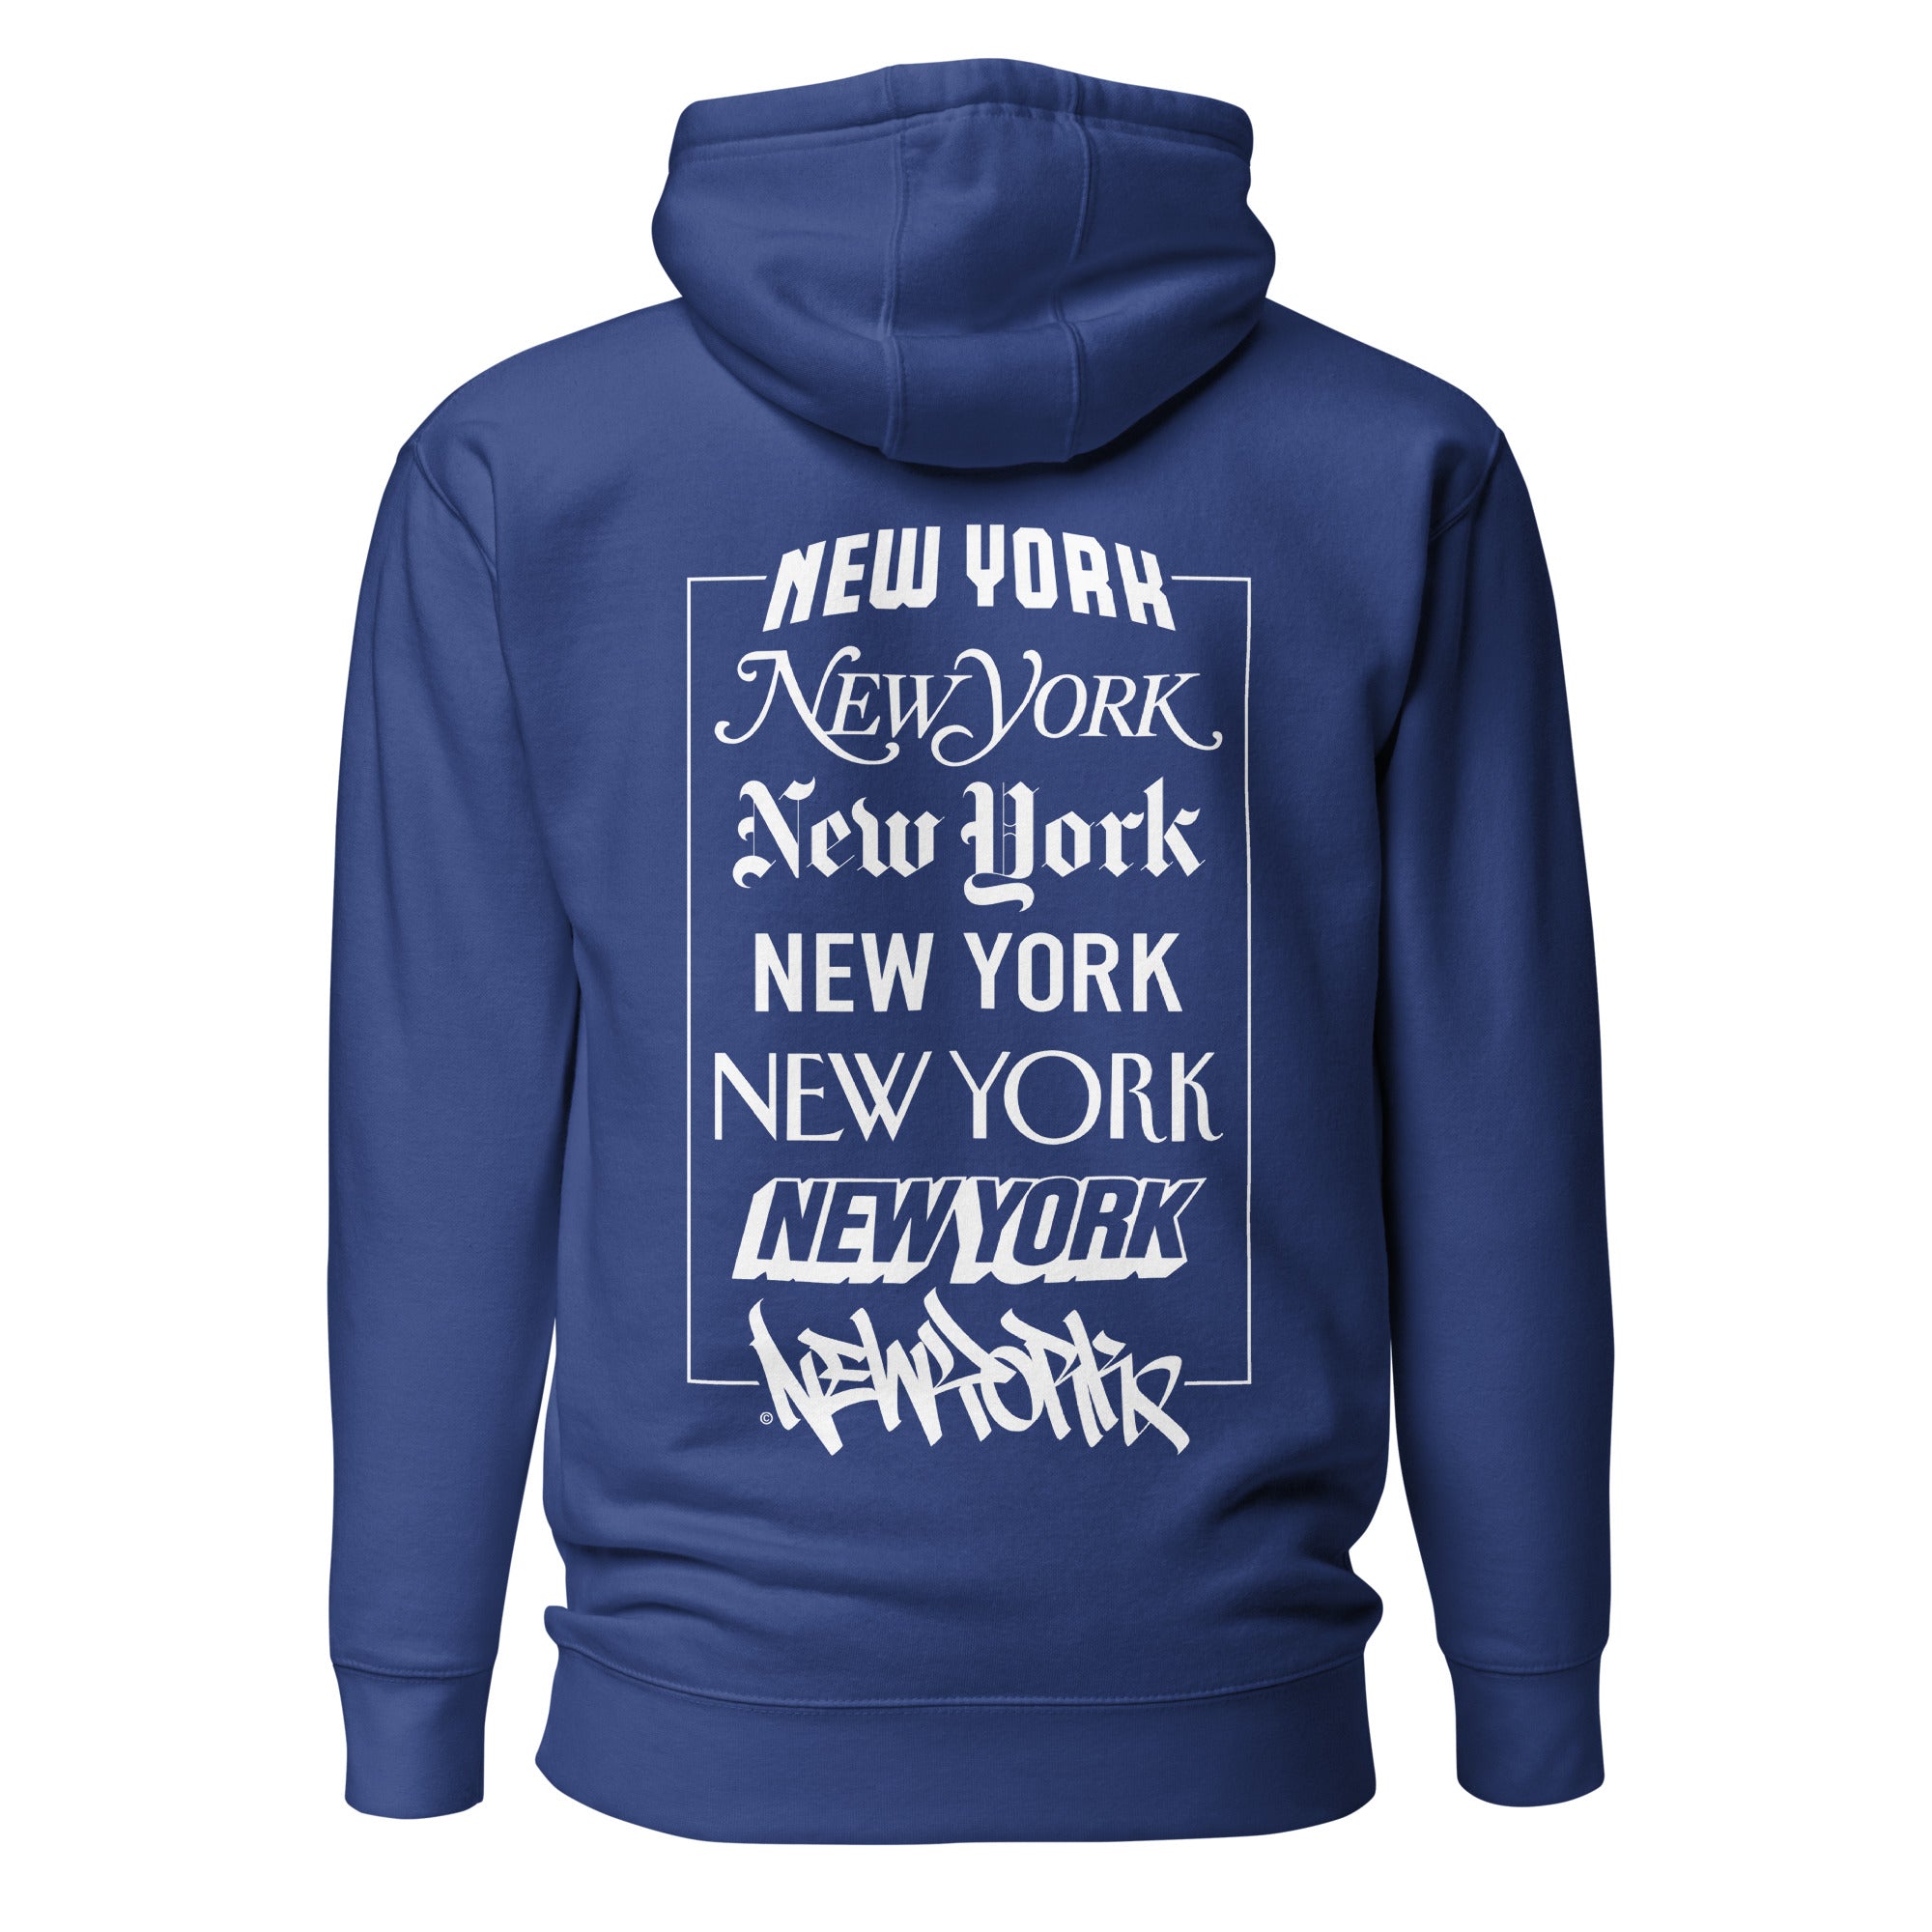 New York Logos - Premium Unisex Hoodie - GustoNYC